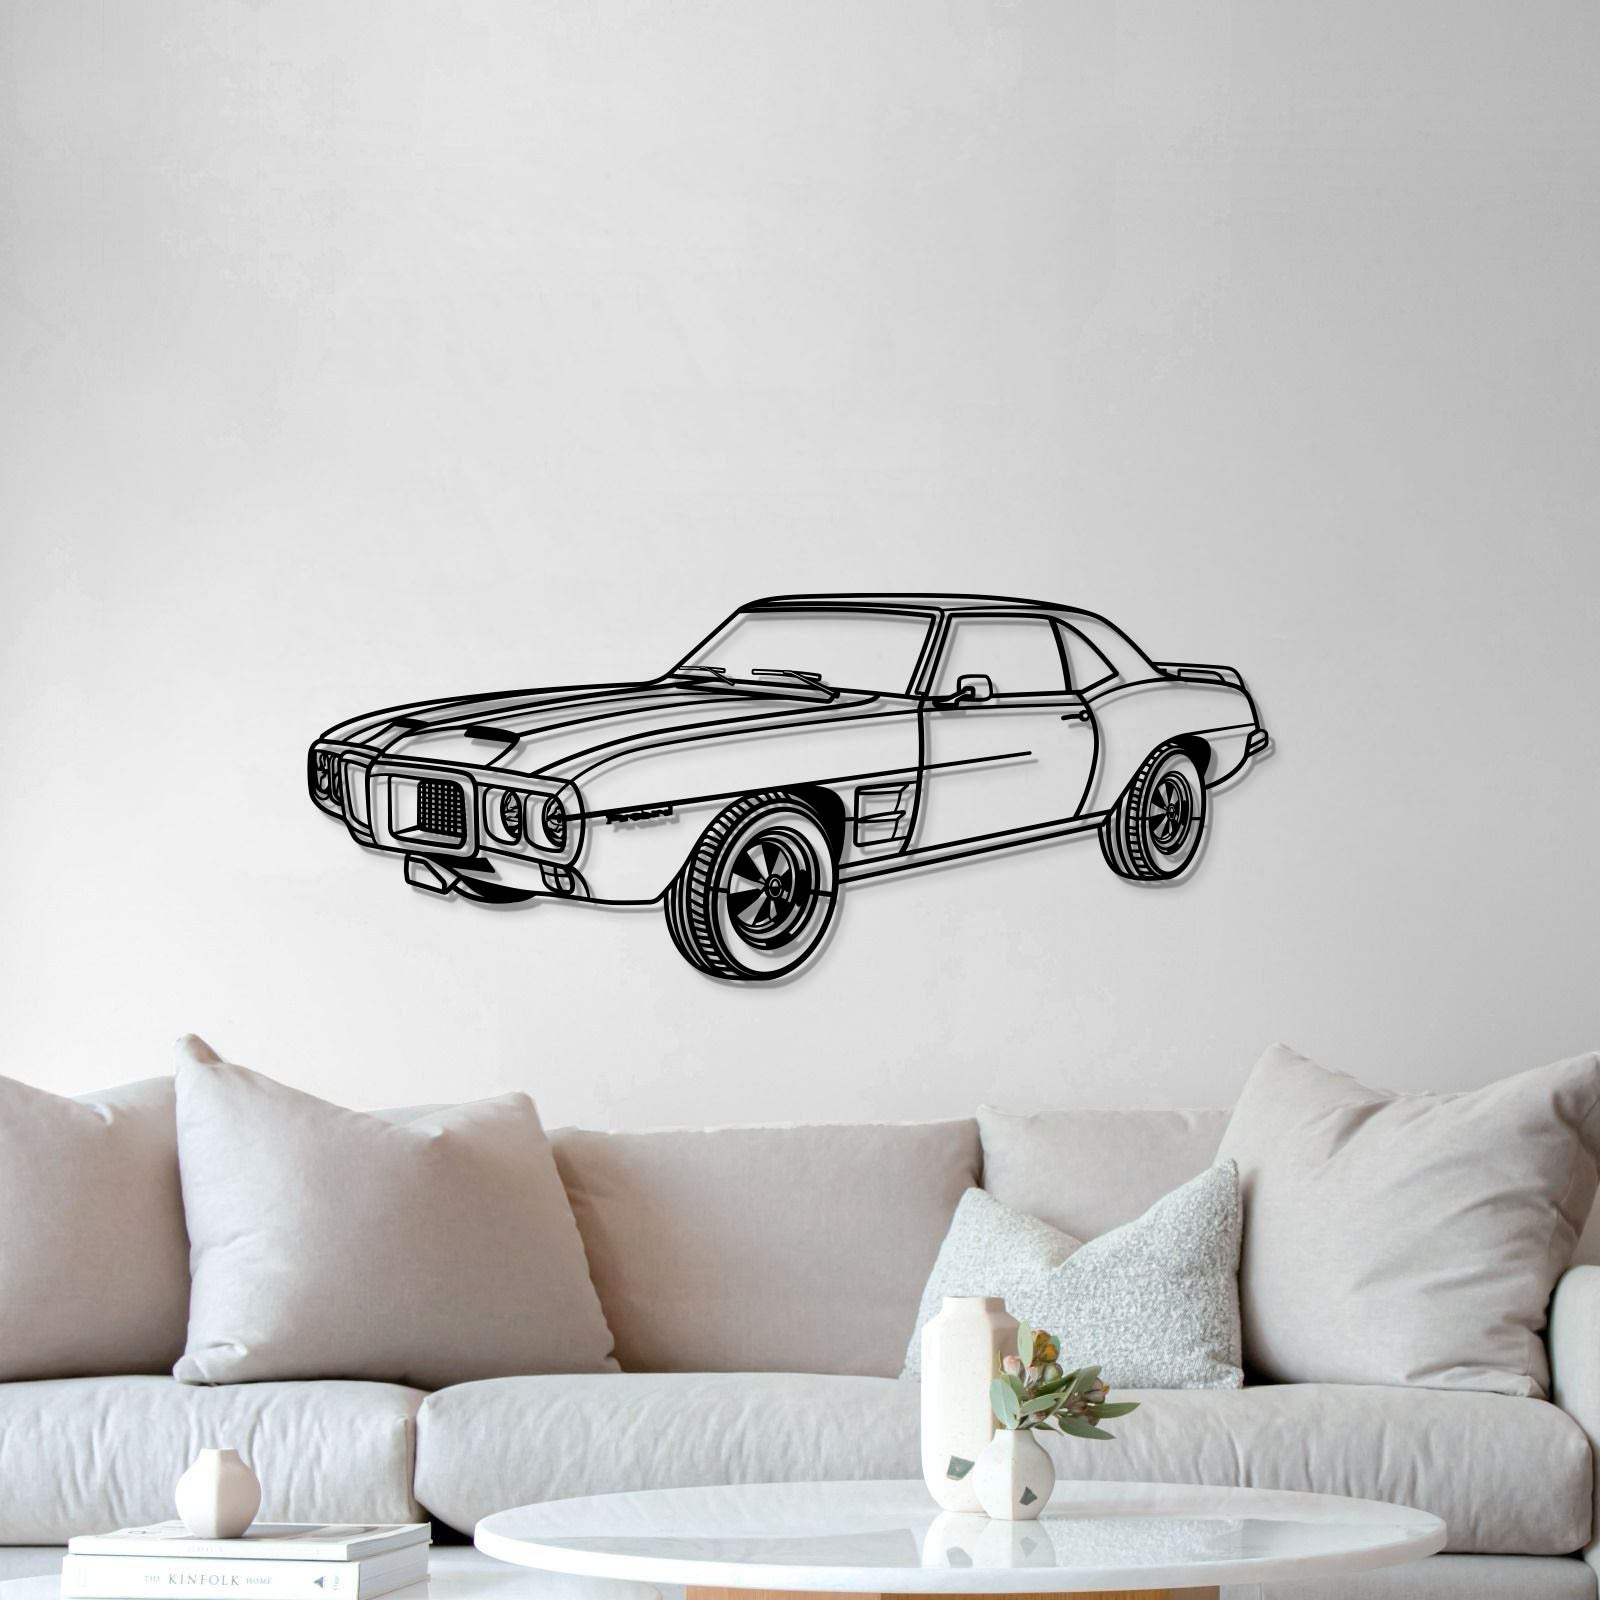 1969 Firebird Trans AM Perspective Metal Car Wall Art - MT1184